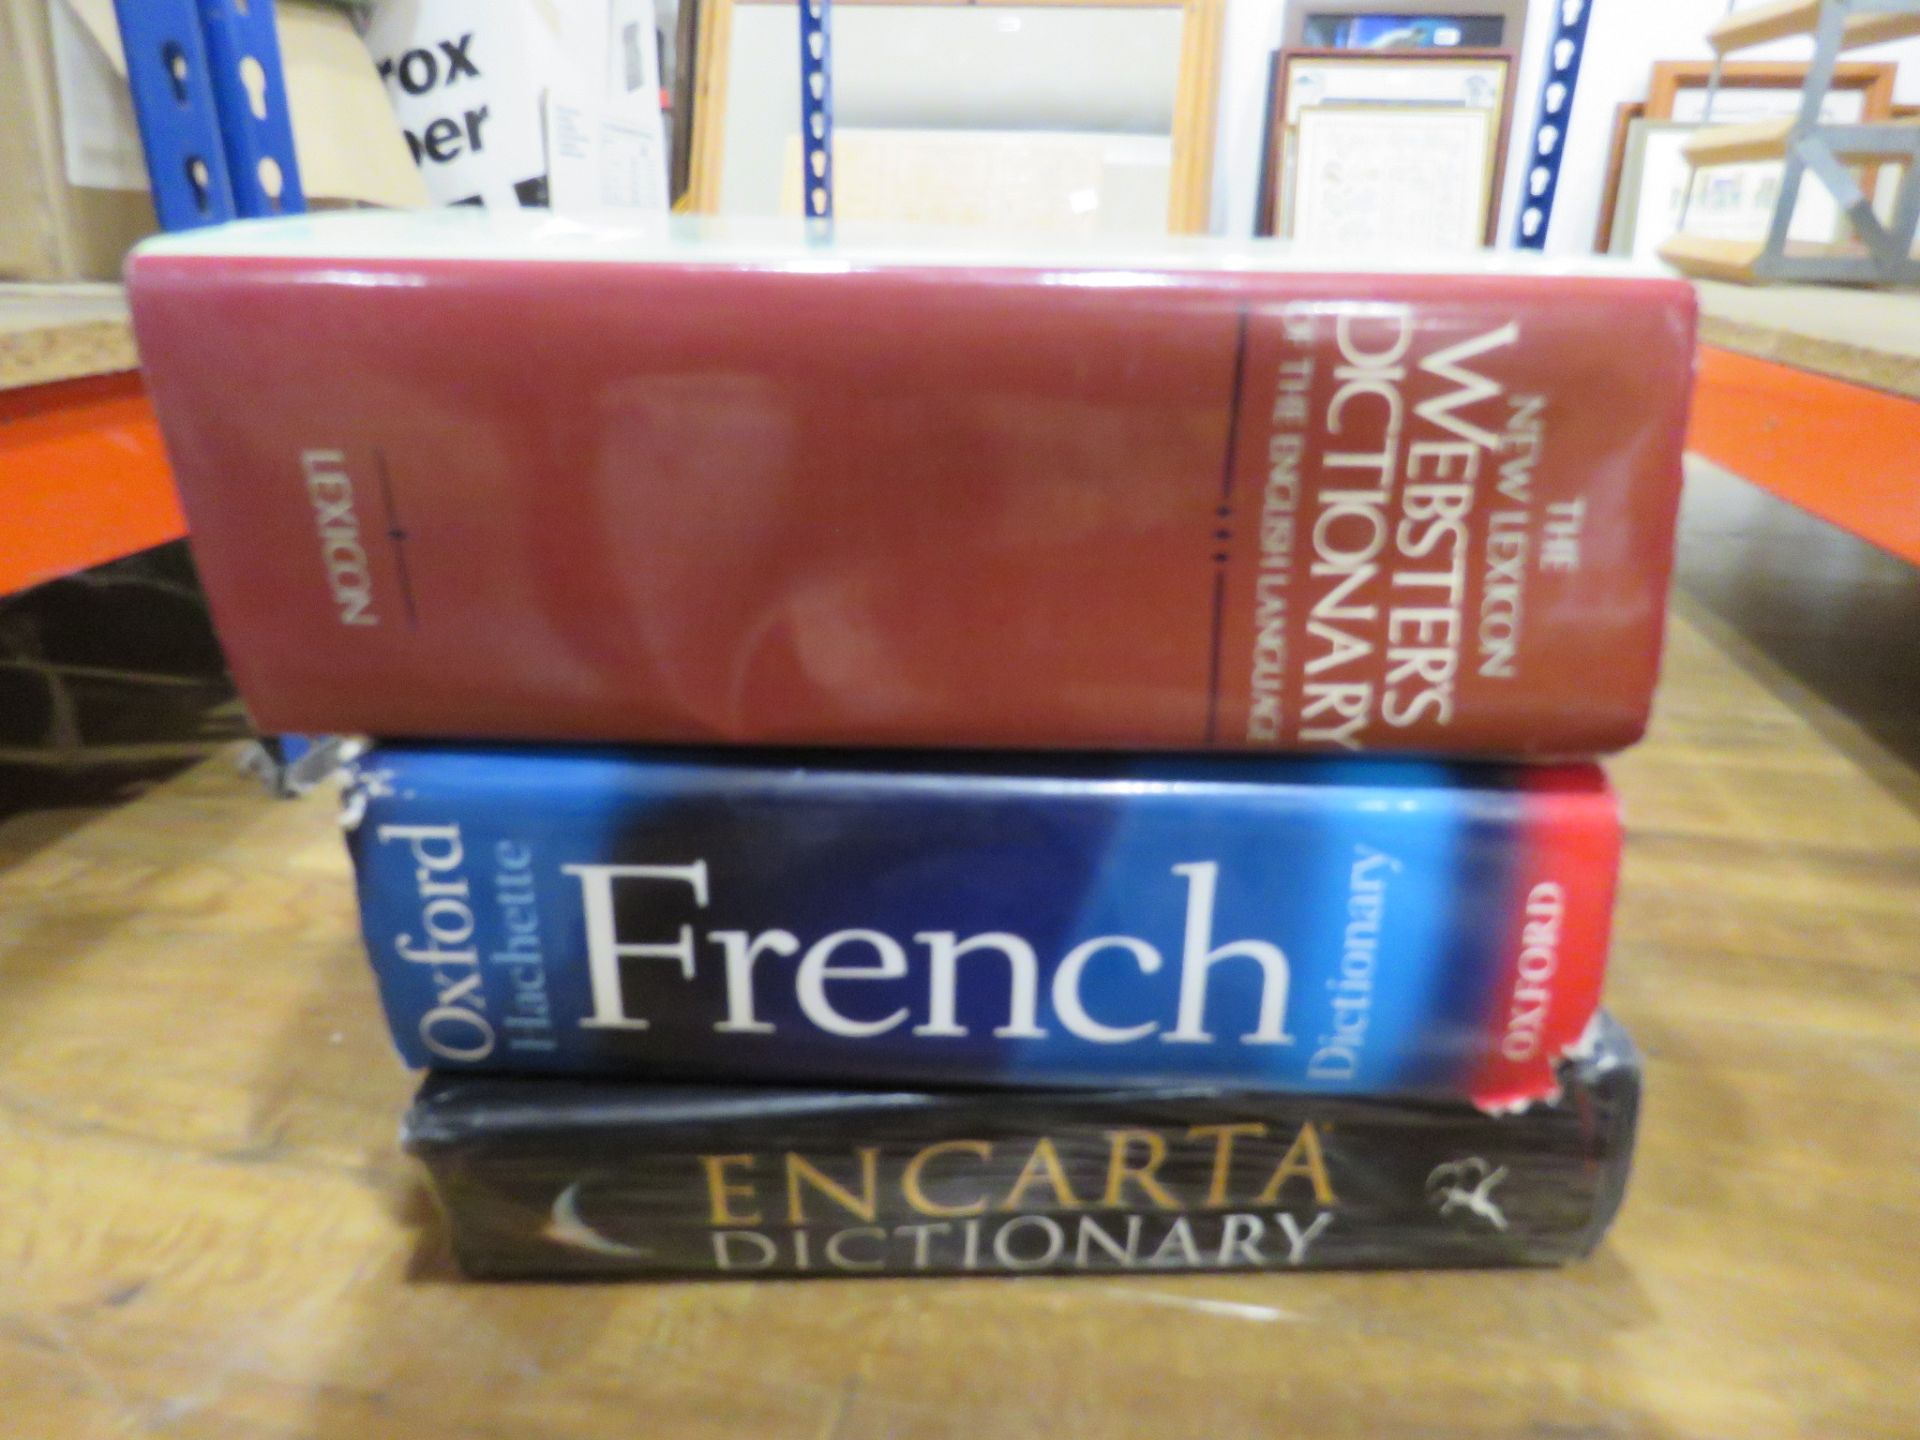 3 dictionaries